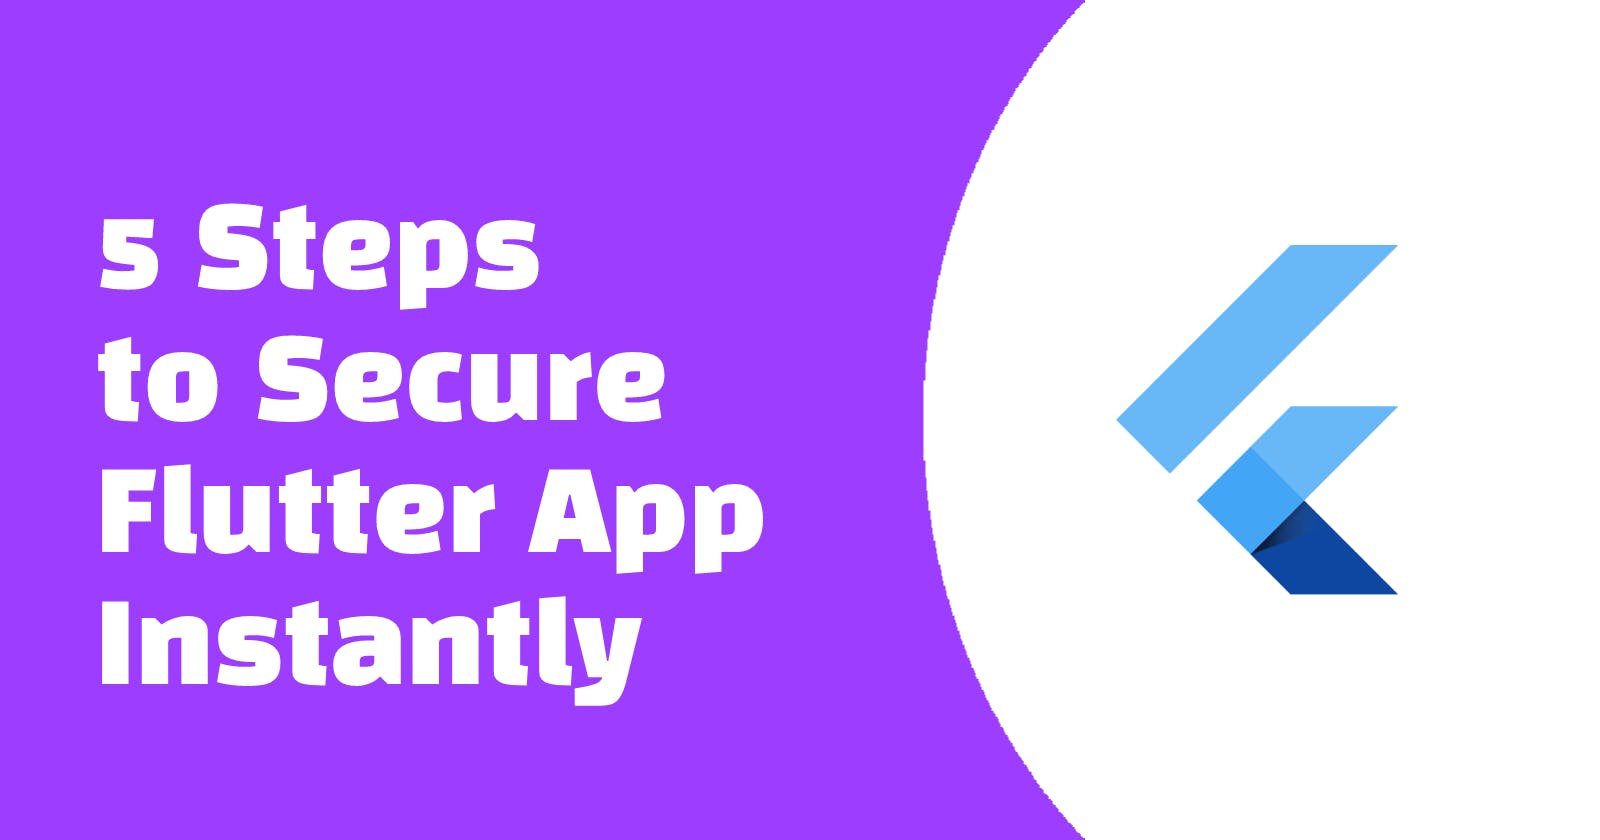 5 Steps to Secure Flutter App Instantly